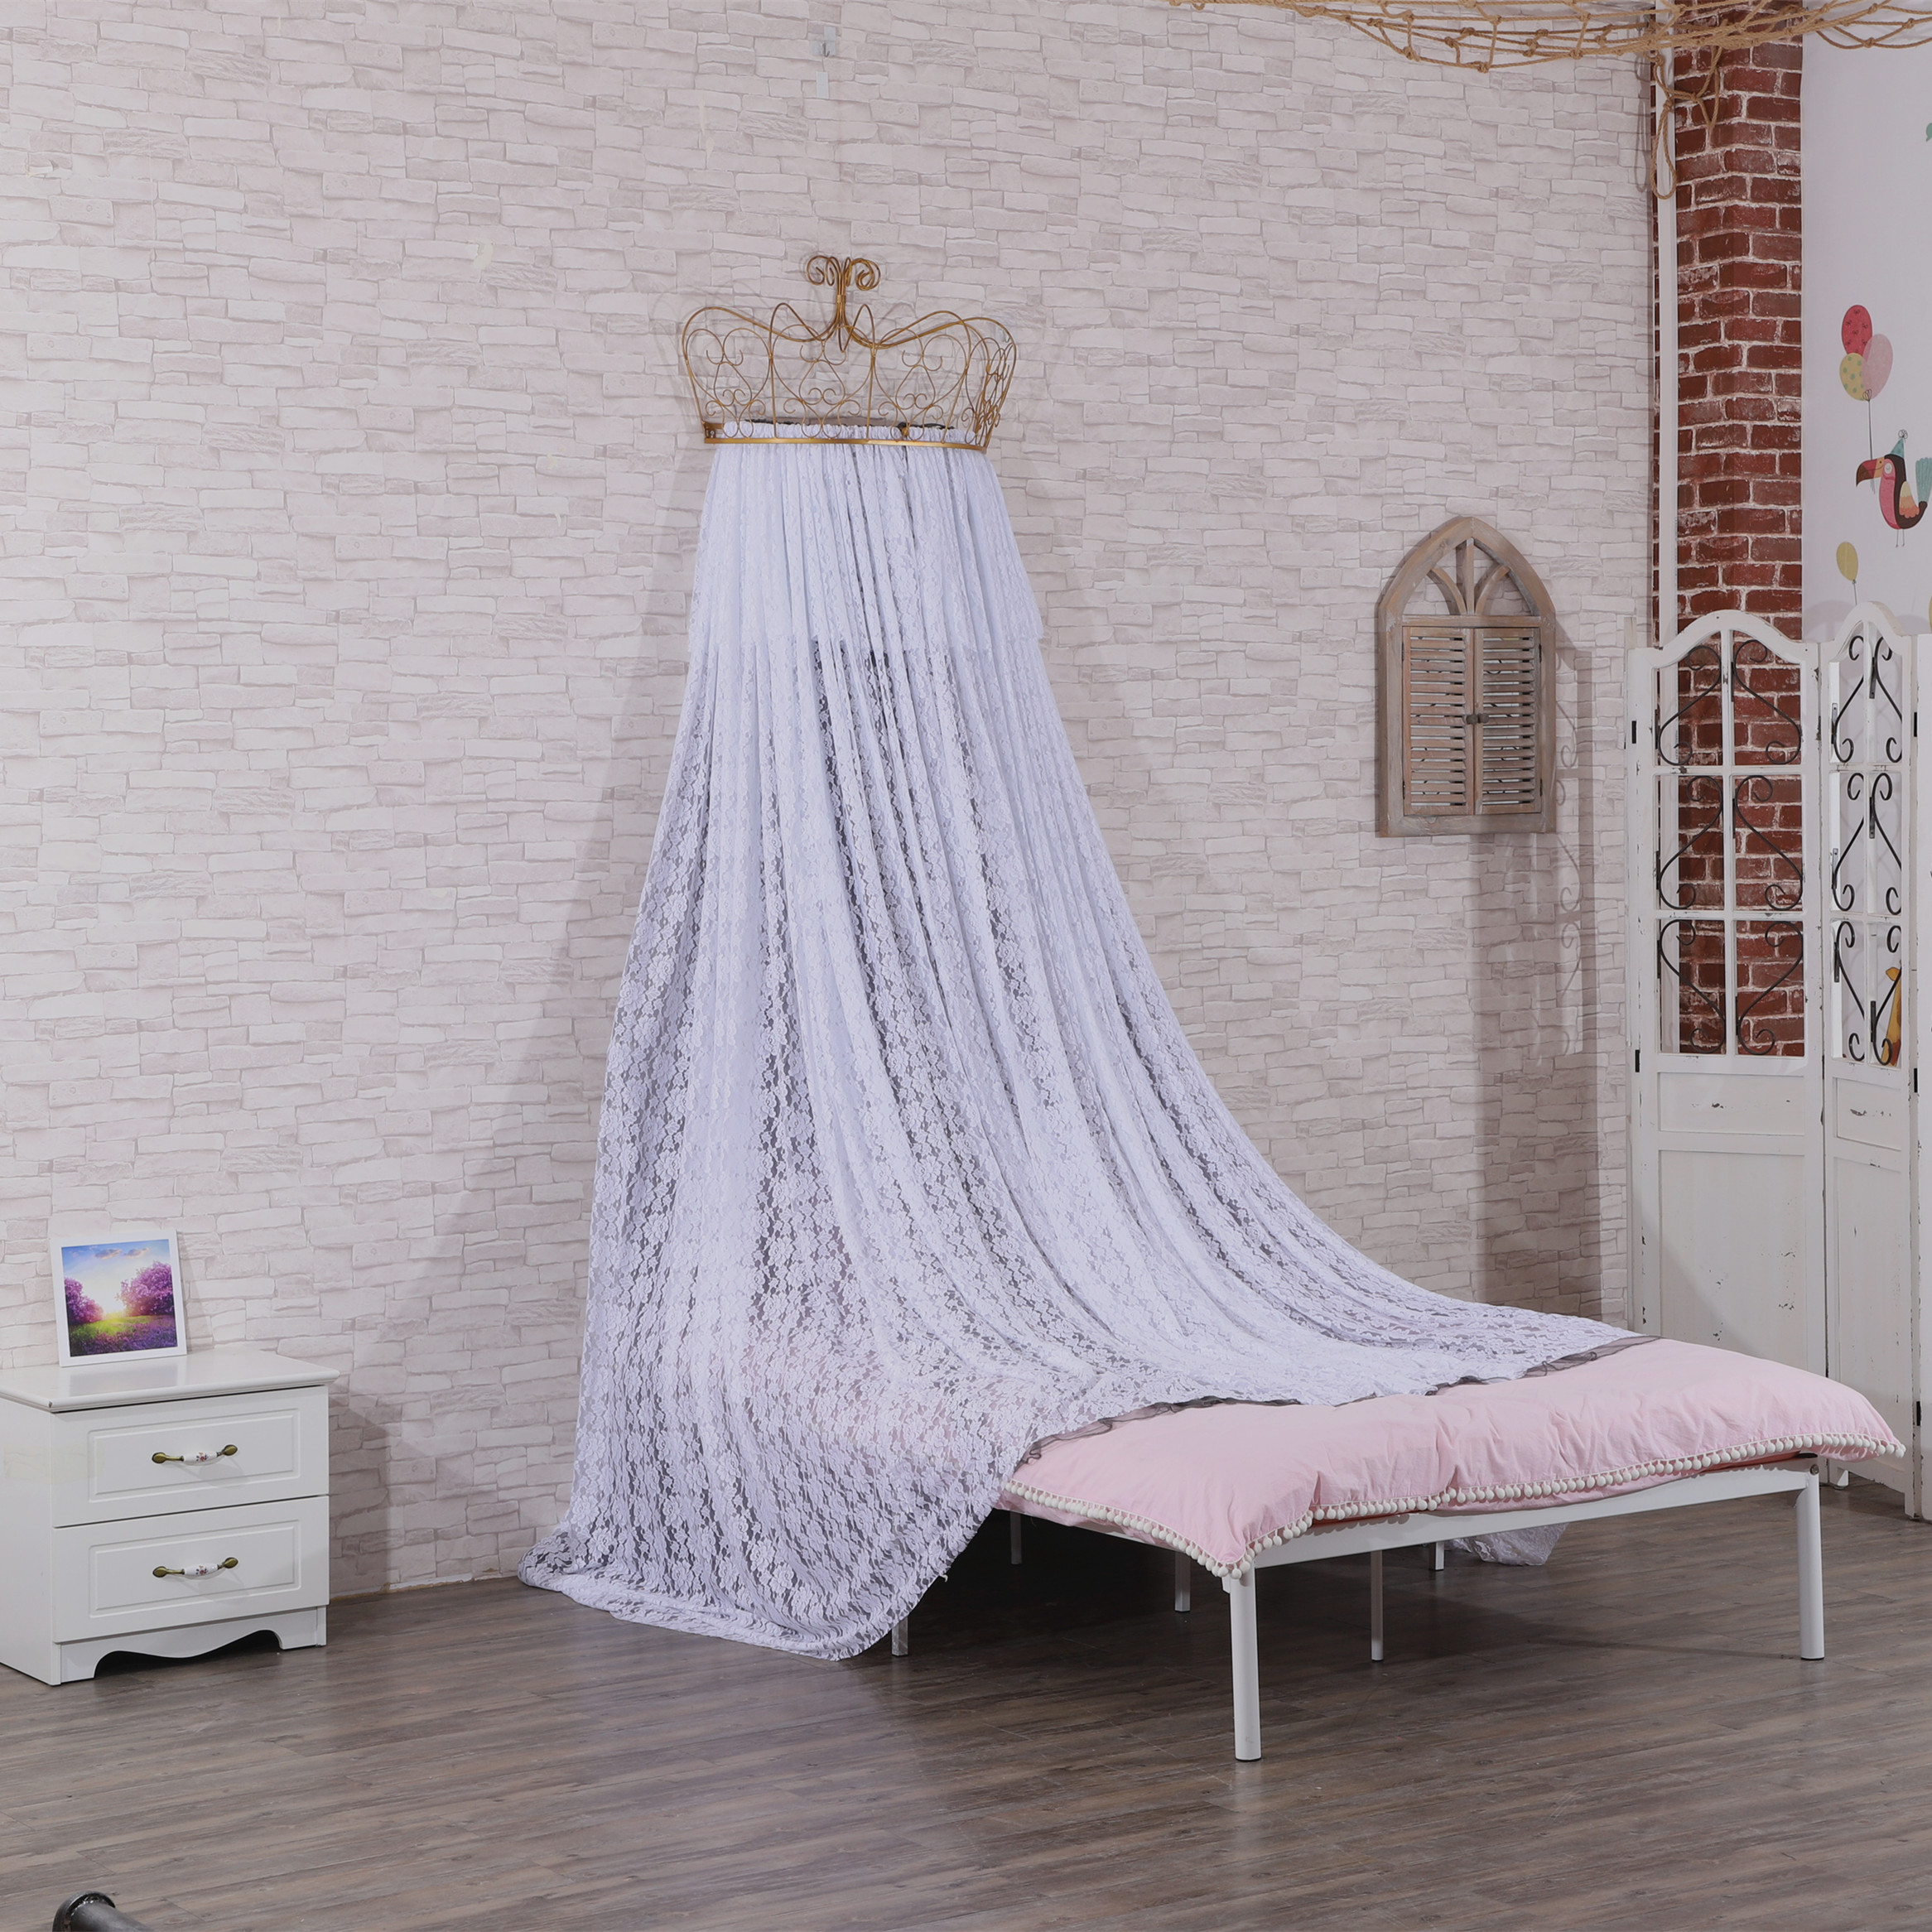 Neueste Design Princess Crown Top Moskitonetze Spitze Bett Vorhänge